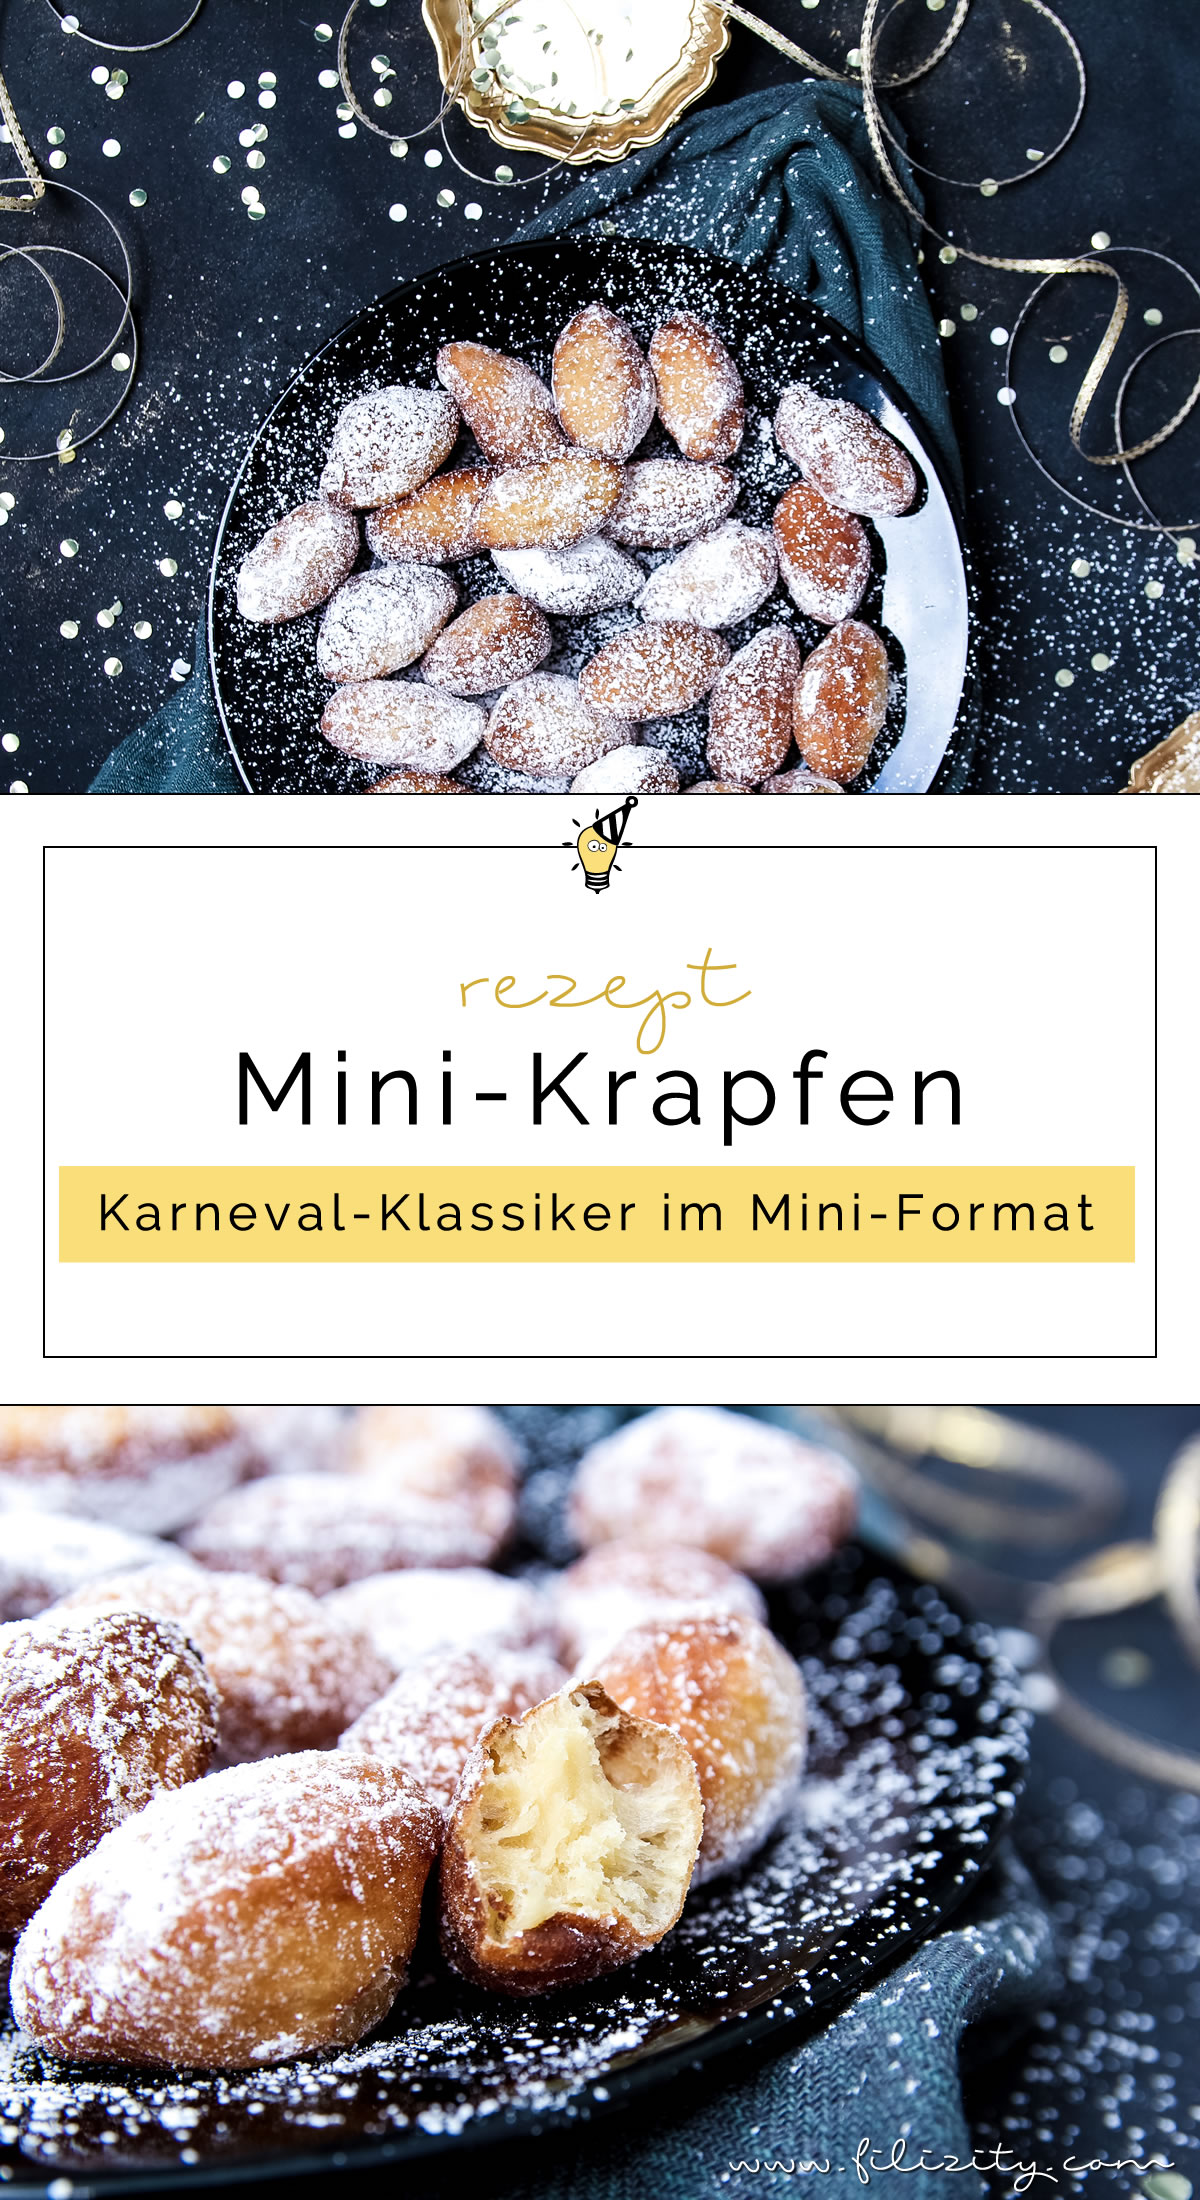 Fasching-Rezept für Mini-Krapfen | Berliner ohne Füllung | Filizity.com | Food-Blog aus dem Rheinland #helau #alaaf #karneval #fasching #berliner #partyfood